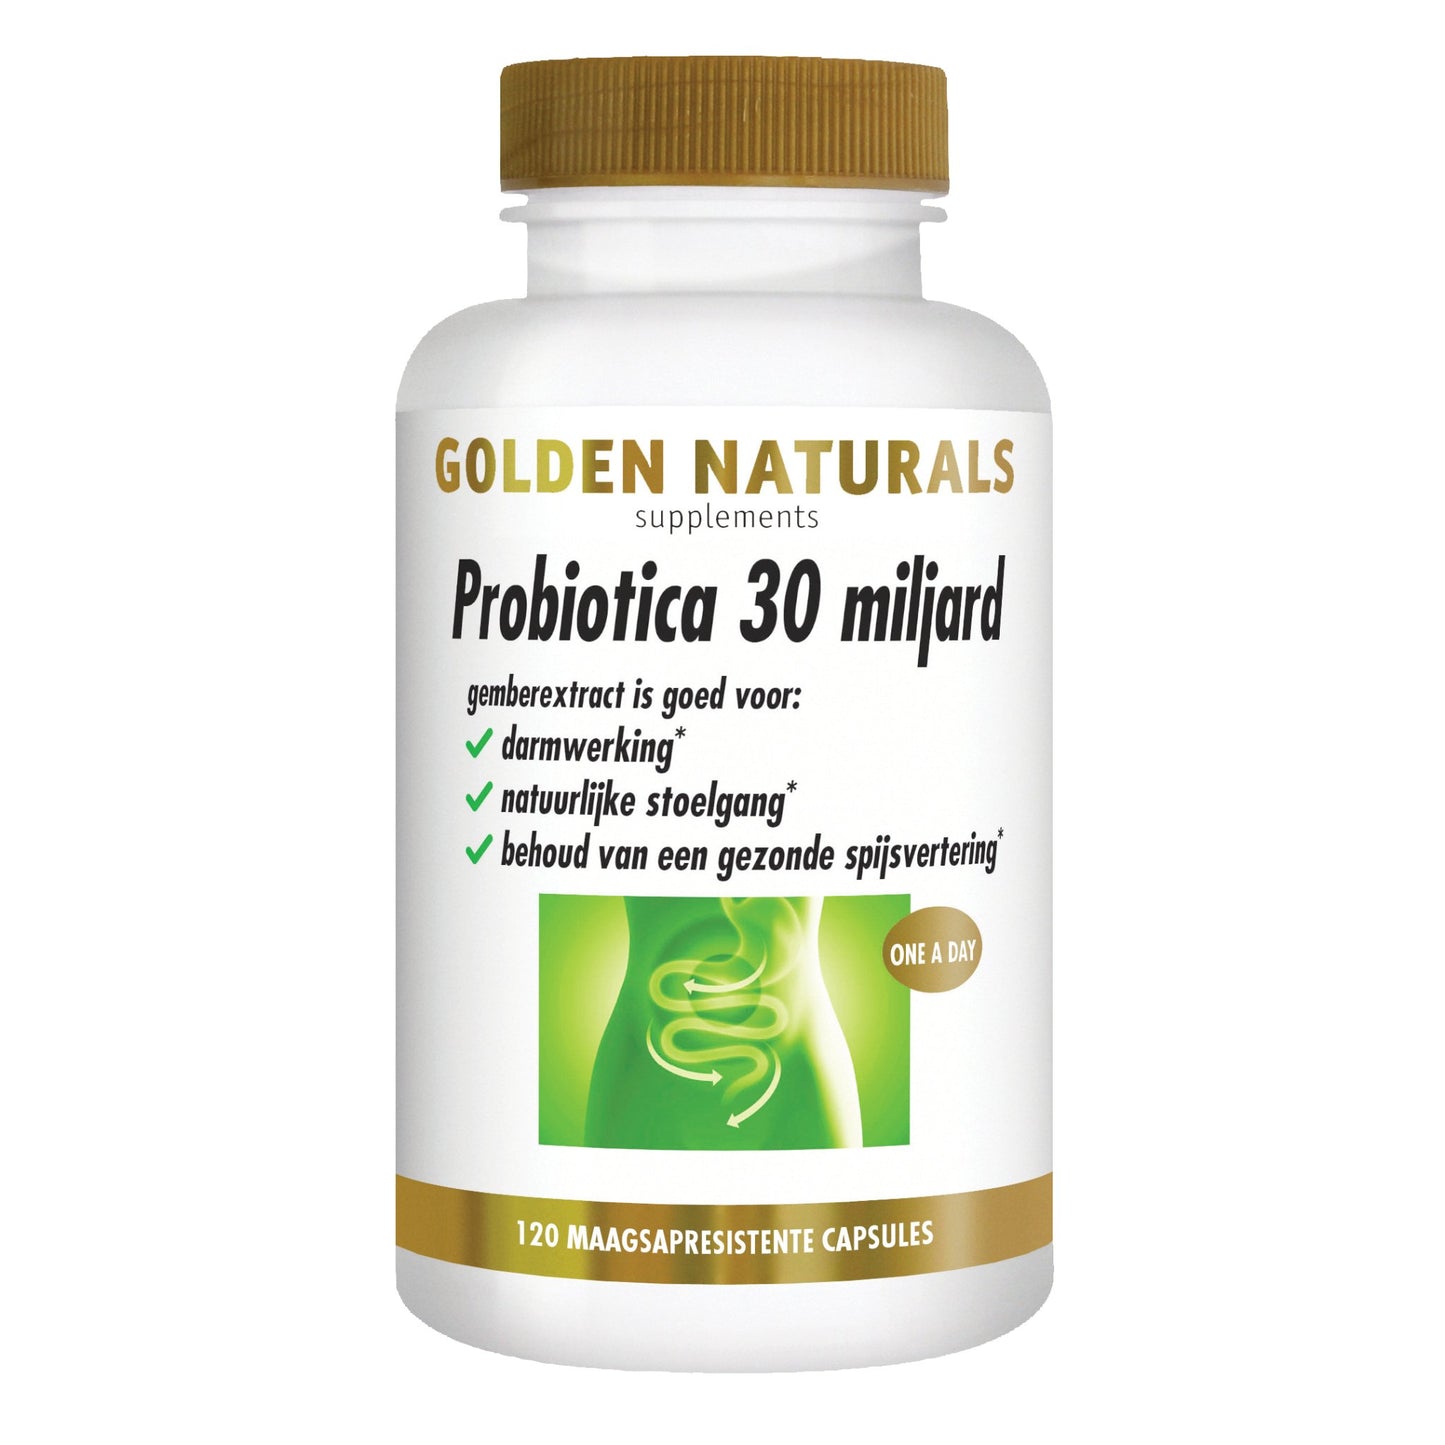 Probiotica 30 miljard - 120 - veganistische maagsapresistente capsules Supplement Golden Naturals   